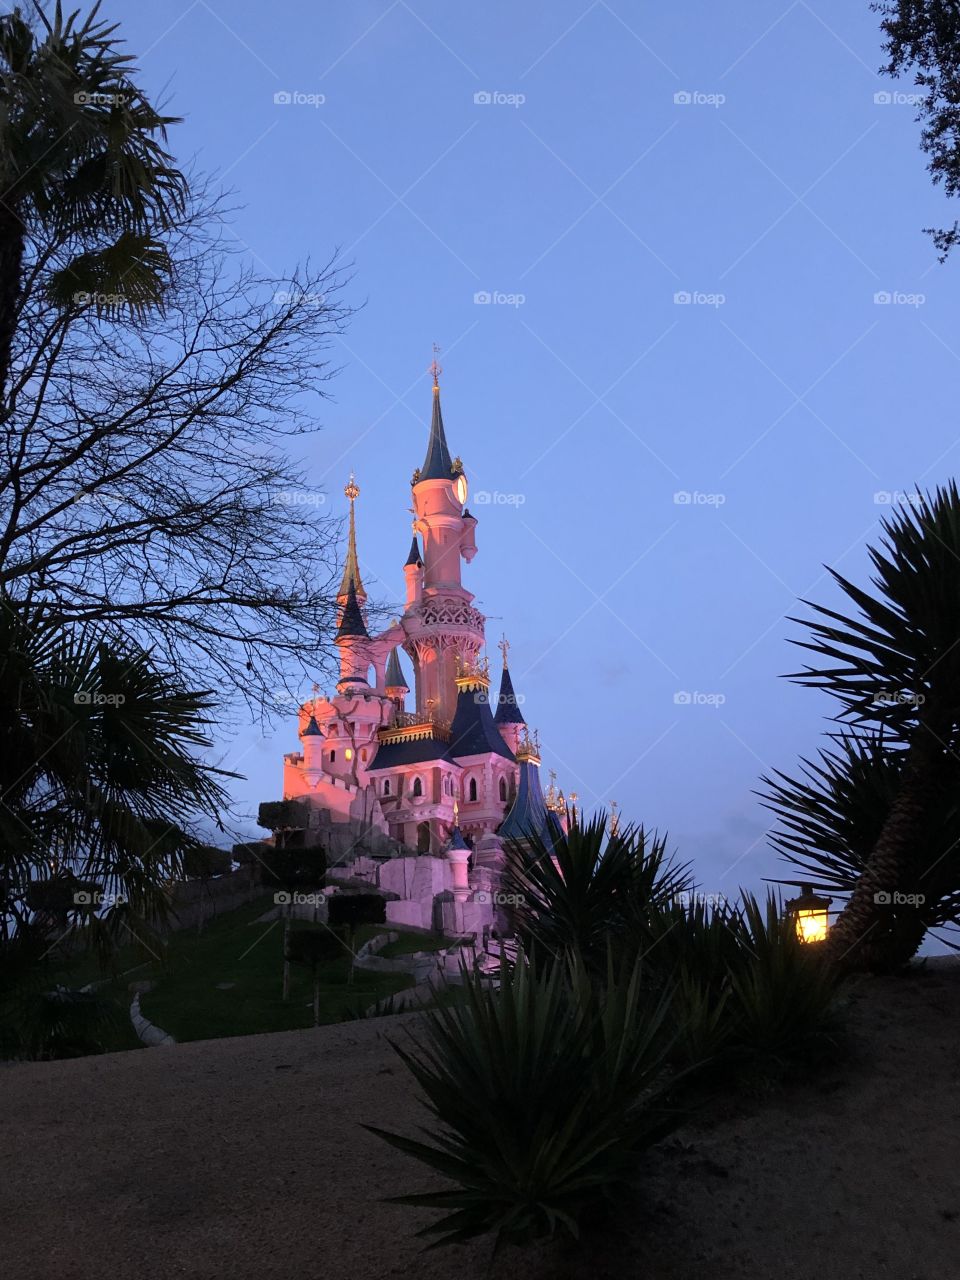 Castle Disneyland paris